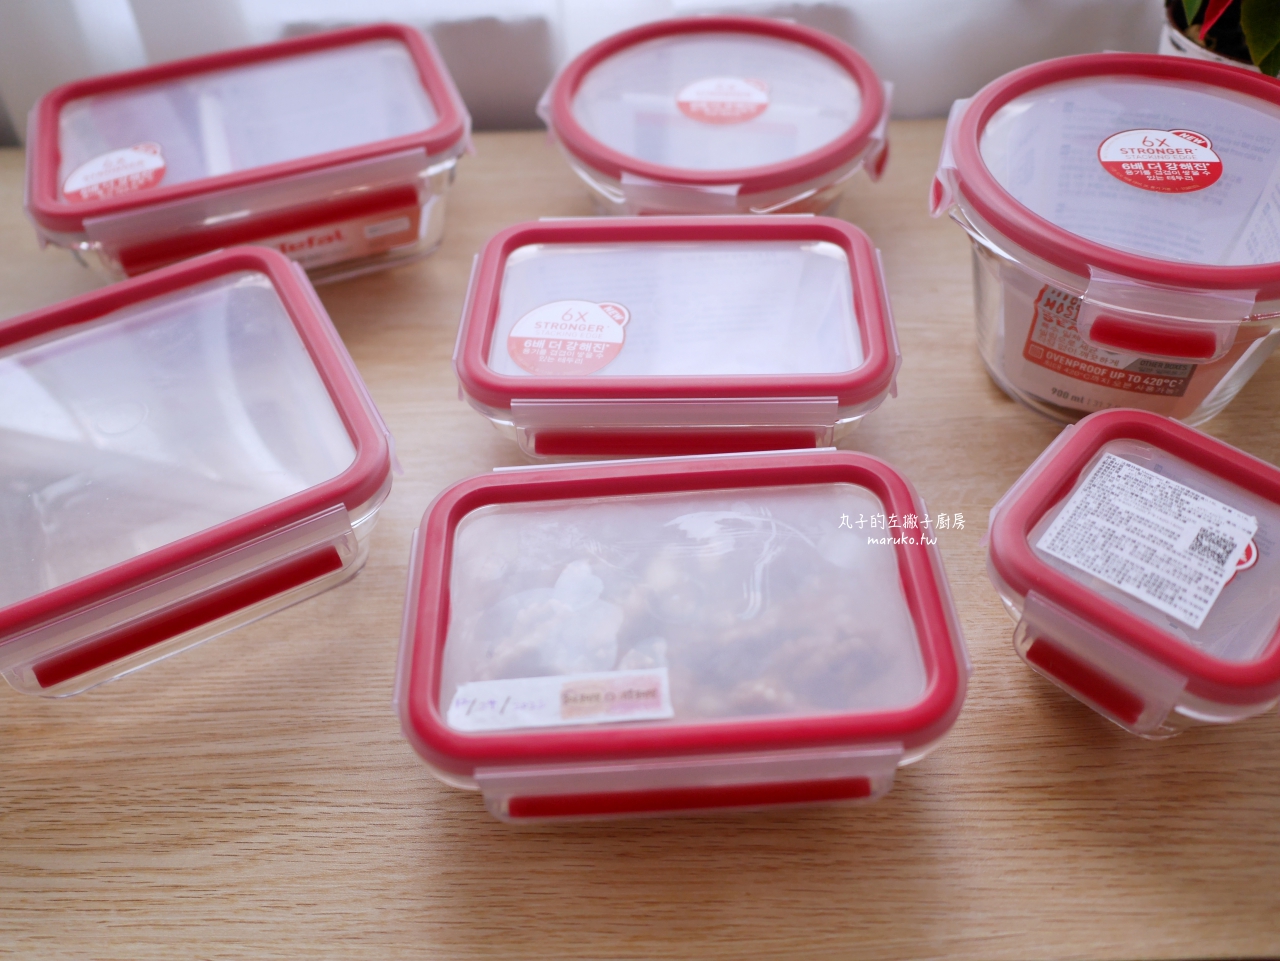 【食譜】Tefal 法國特福保鮮盒系列 新一代無縫膠圈耐熱玻璃保鮮盒、無縫膠圈不鏽鋼保鮮盒一次推薦 @Maruko與美食有個約會